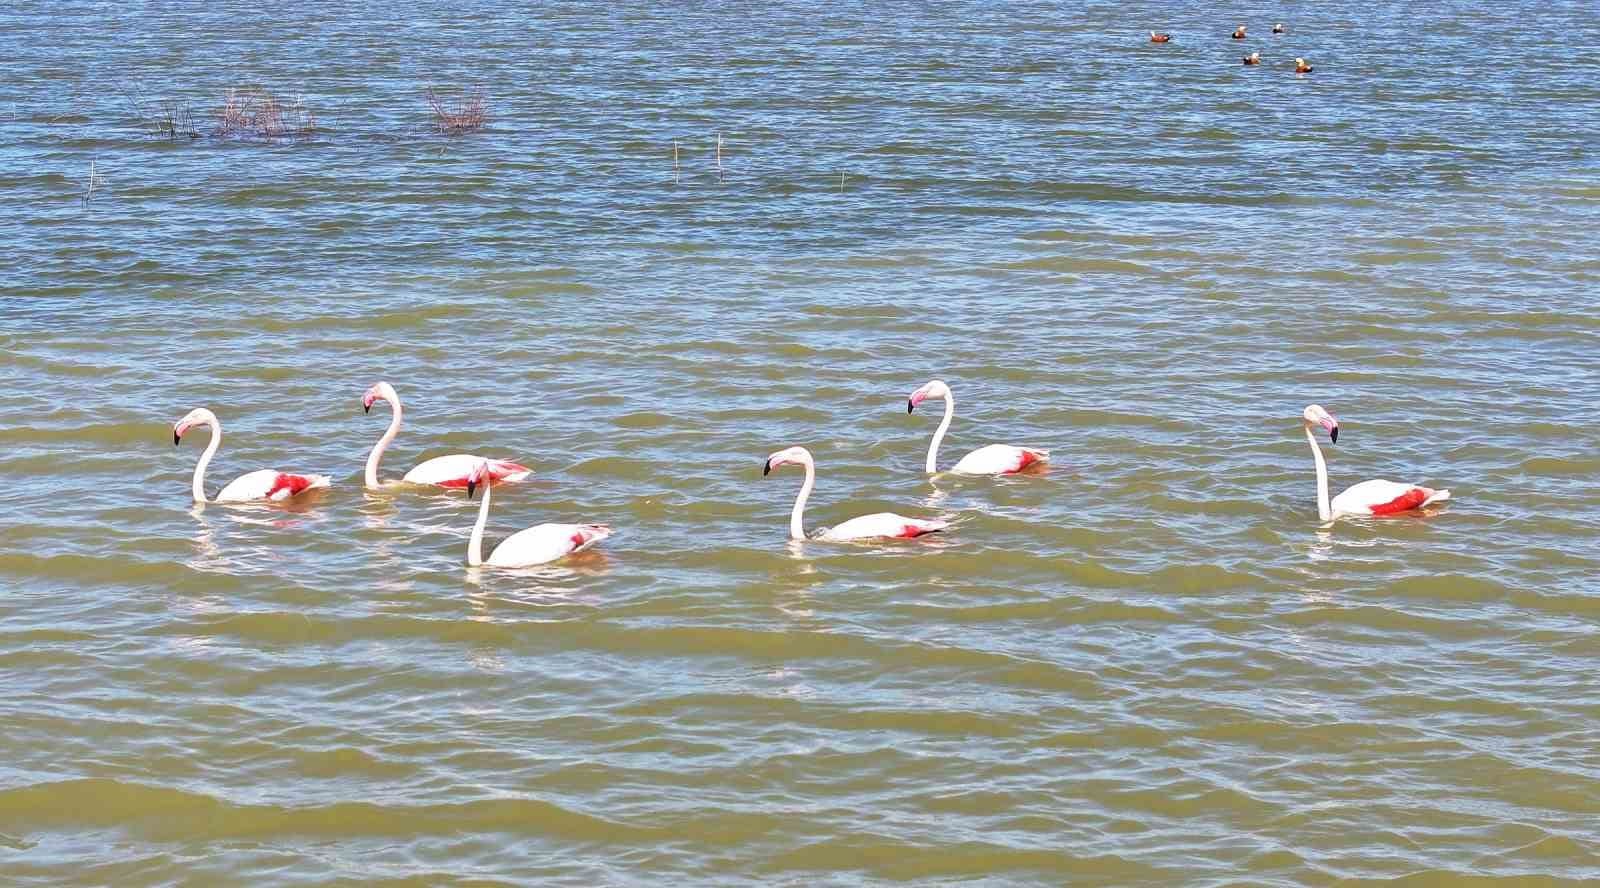 flamingolar golbasina misafir oldu 1 4f78kYv2